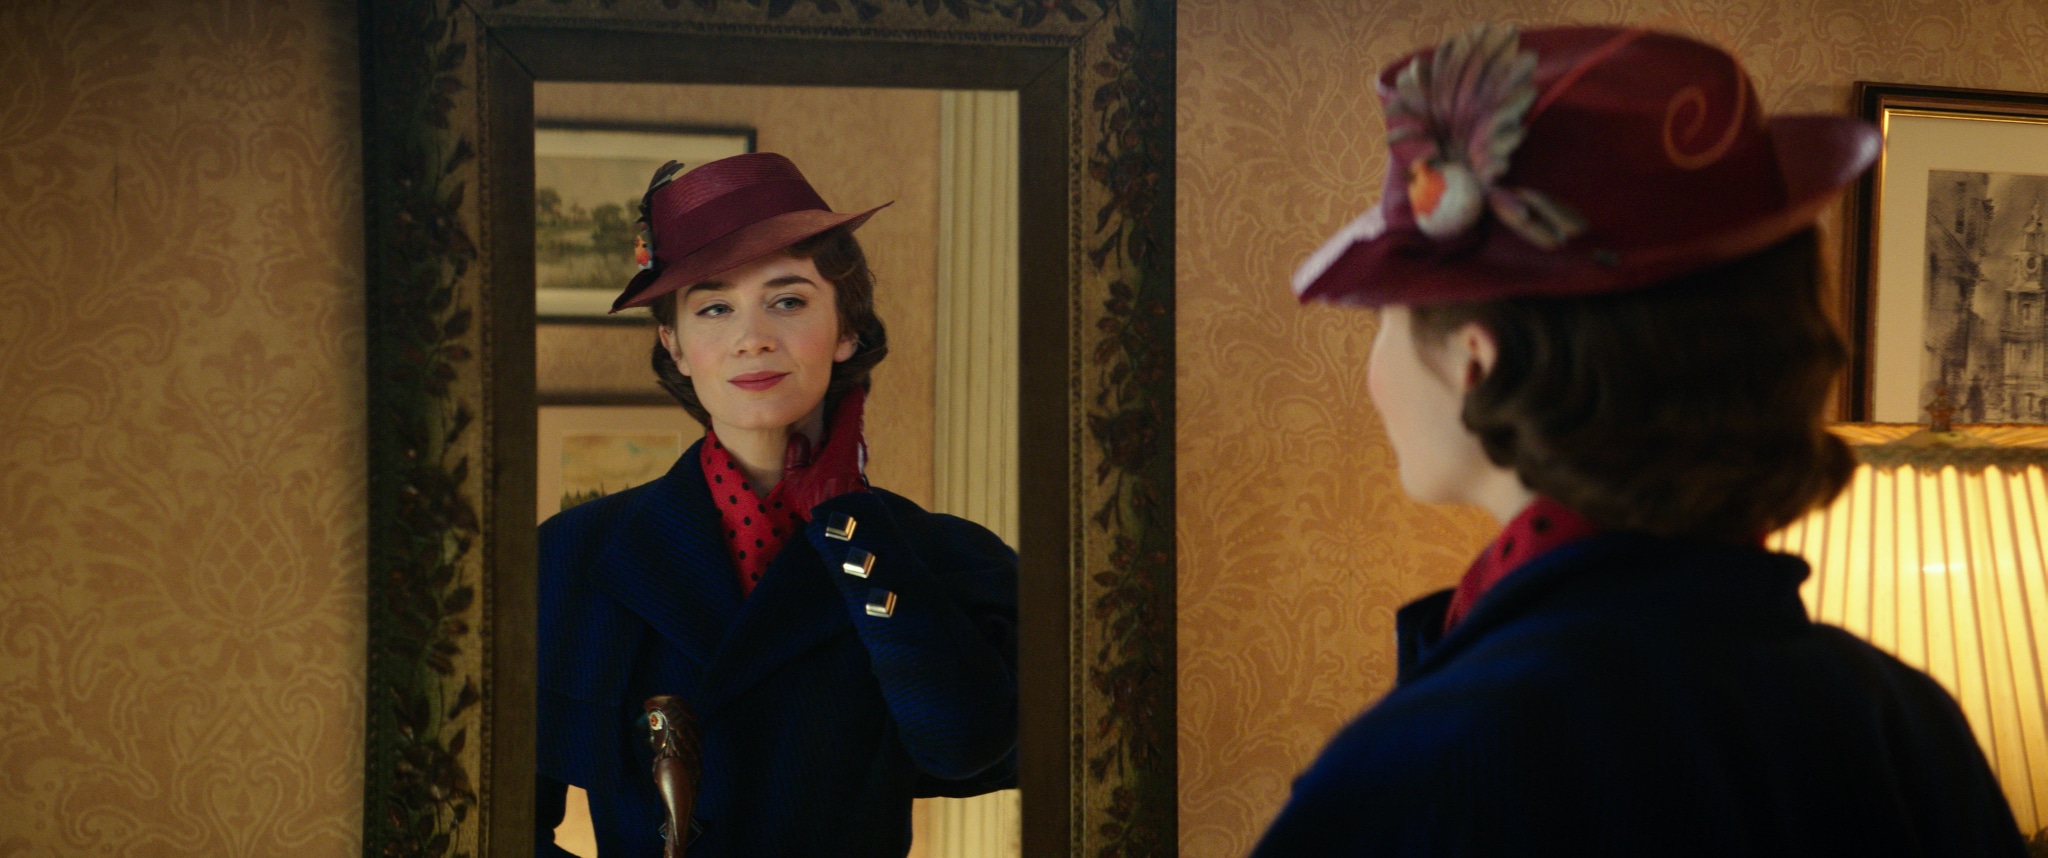 Il Ritorno di Mary Poppins: trailer e poster italiani del film Disney con Emily Blunt